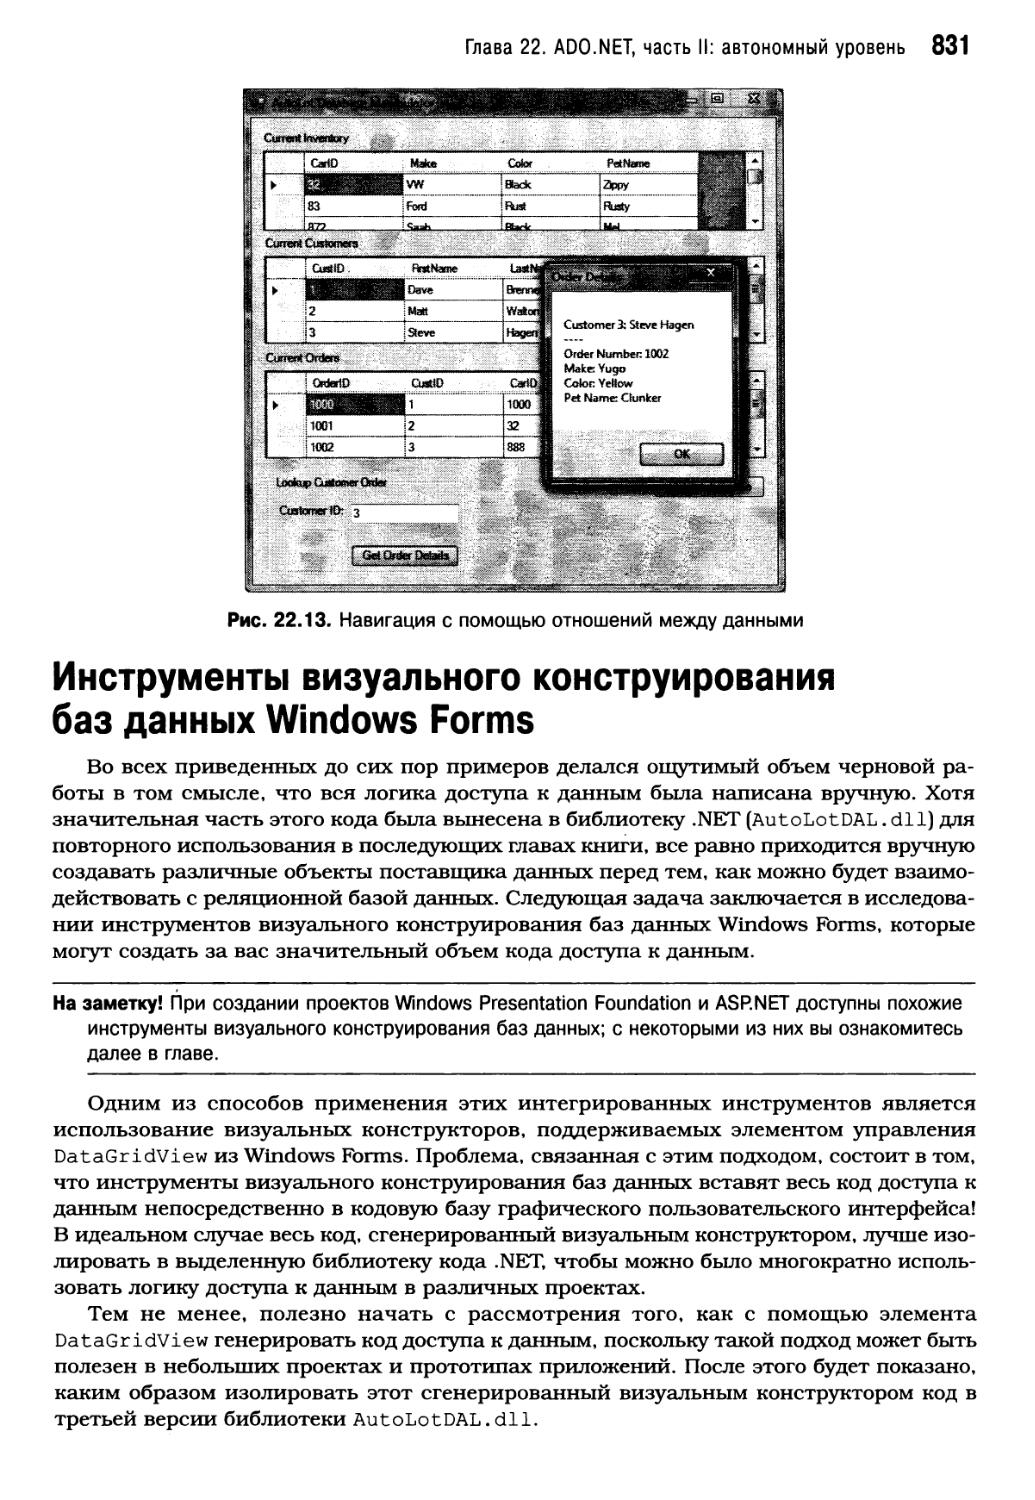 Инструменты визуального конструирования баз данных Windows Forms